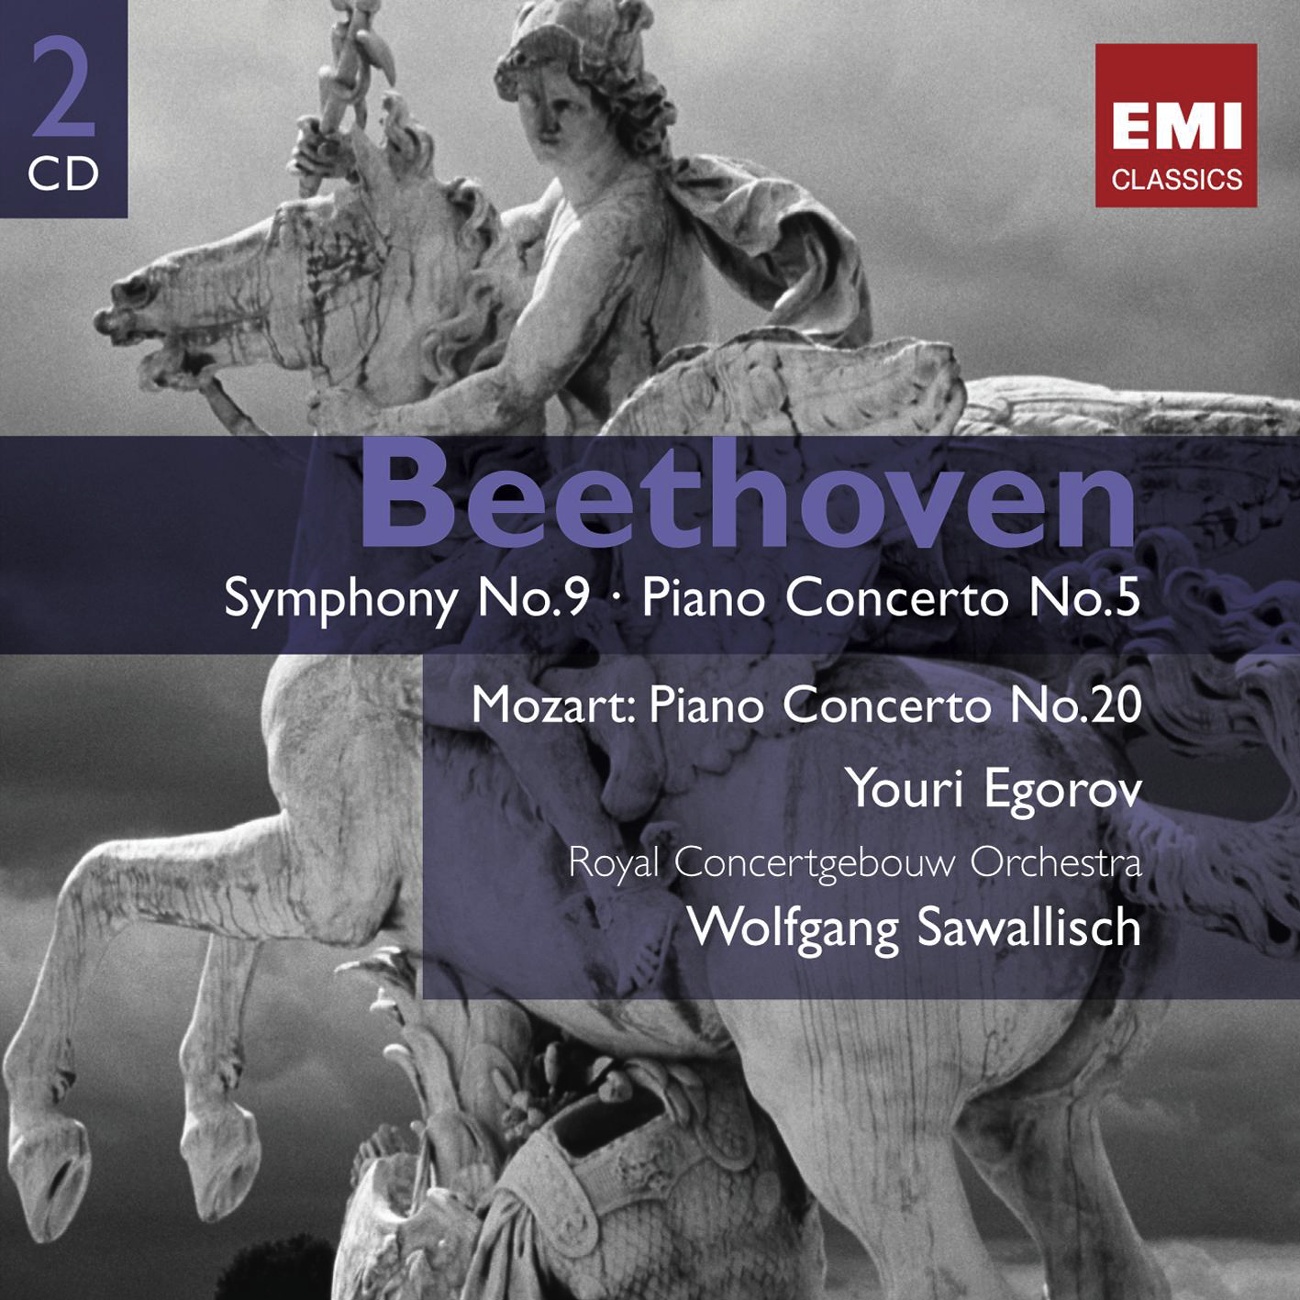 Piano Concerto No. 5 in E flat 'Emperor' Op. 73: III. Rondo (Allegro)